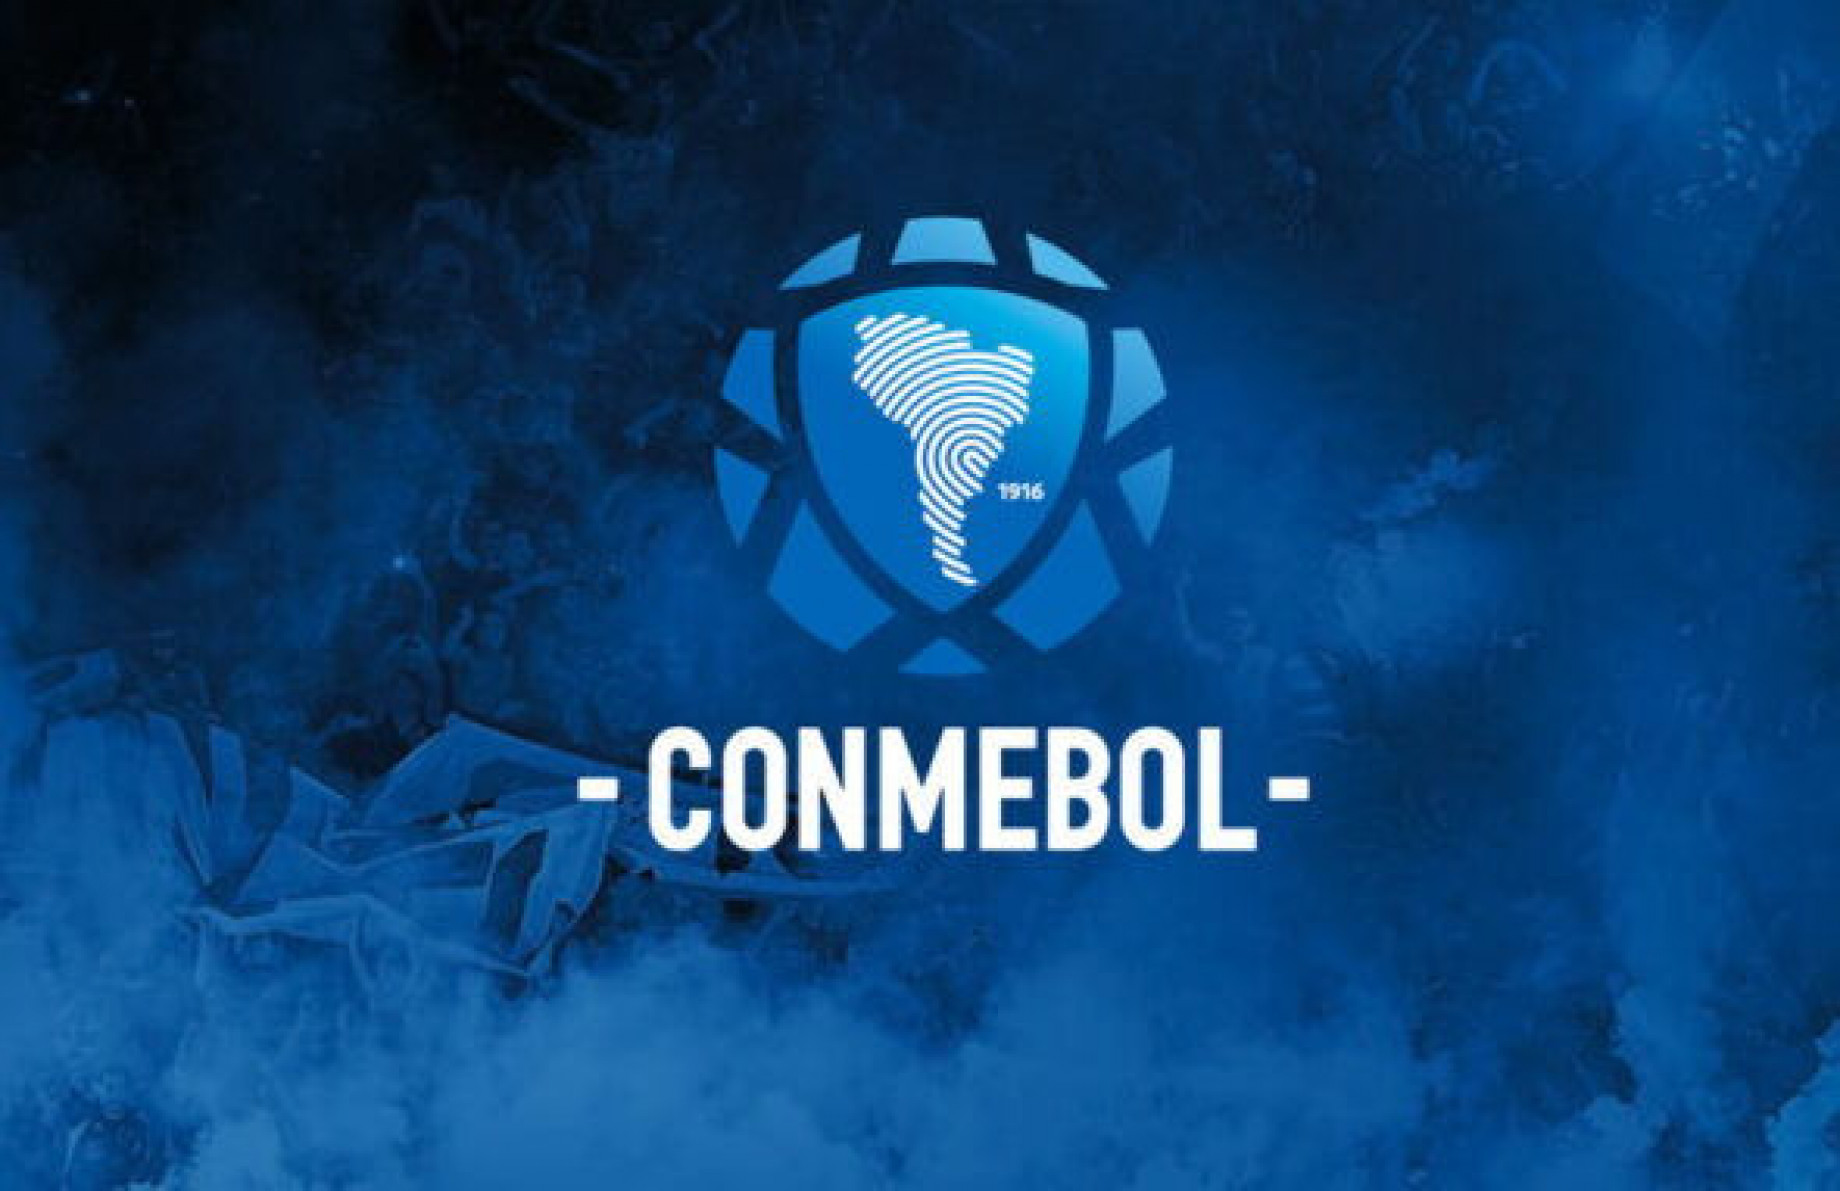 Conmebol logo.jpg